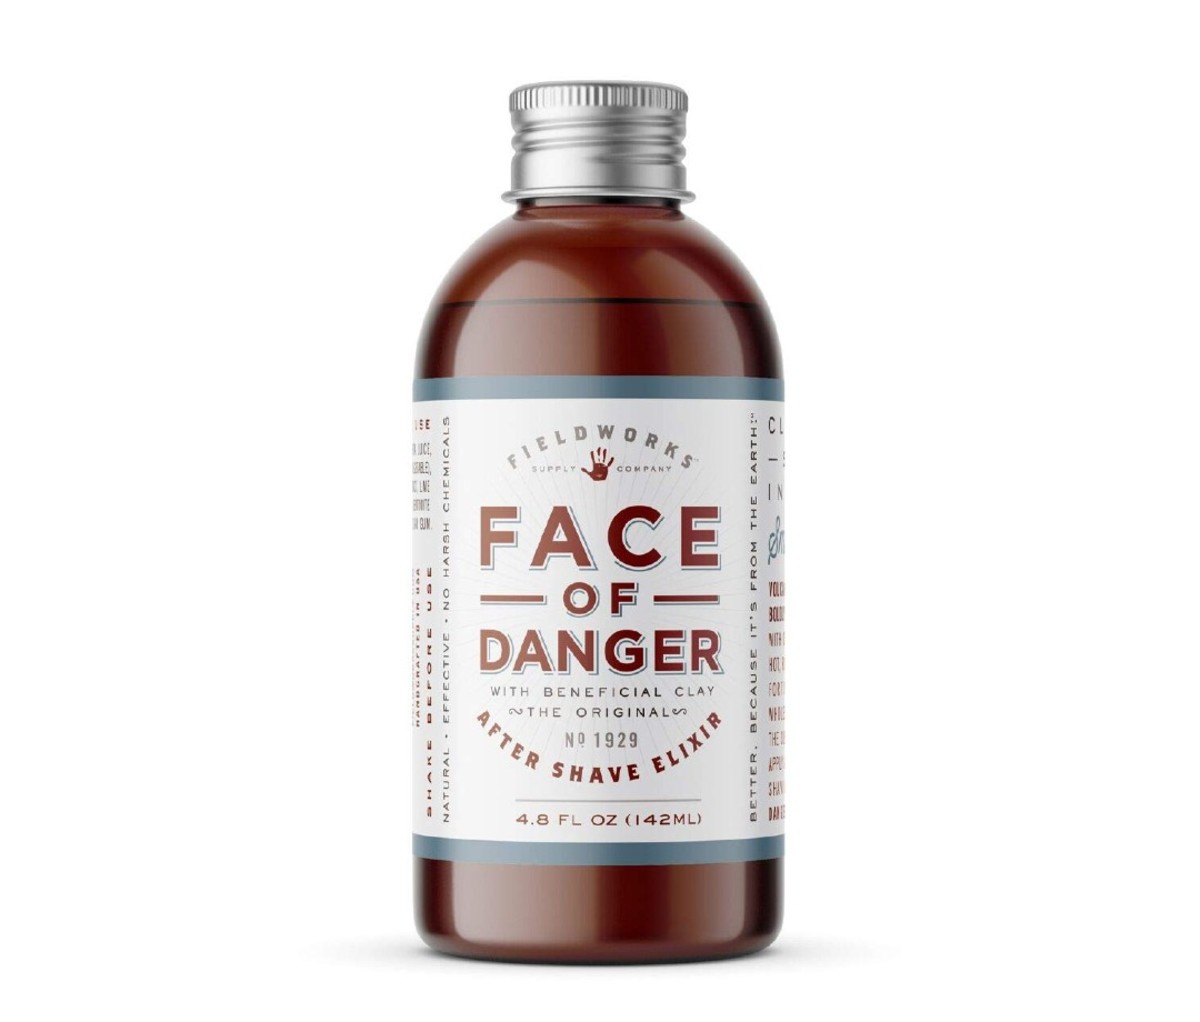 Fieldworks’ Face of Danger After Shave Elixir